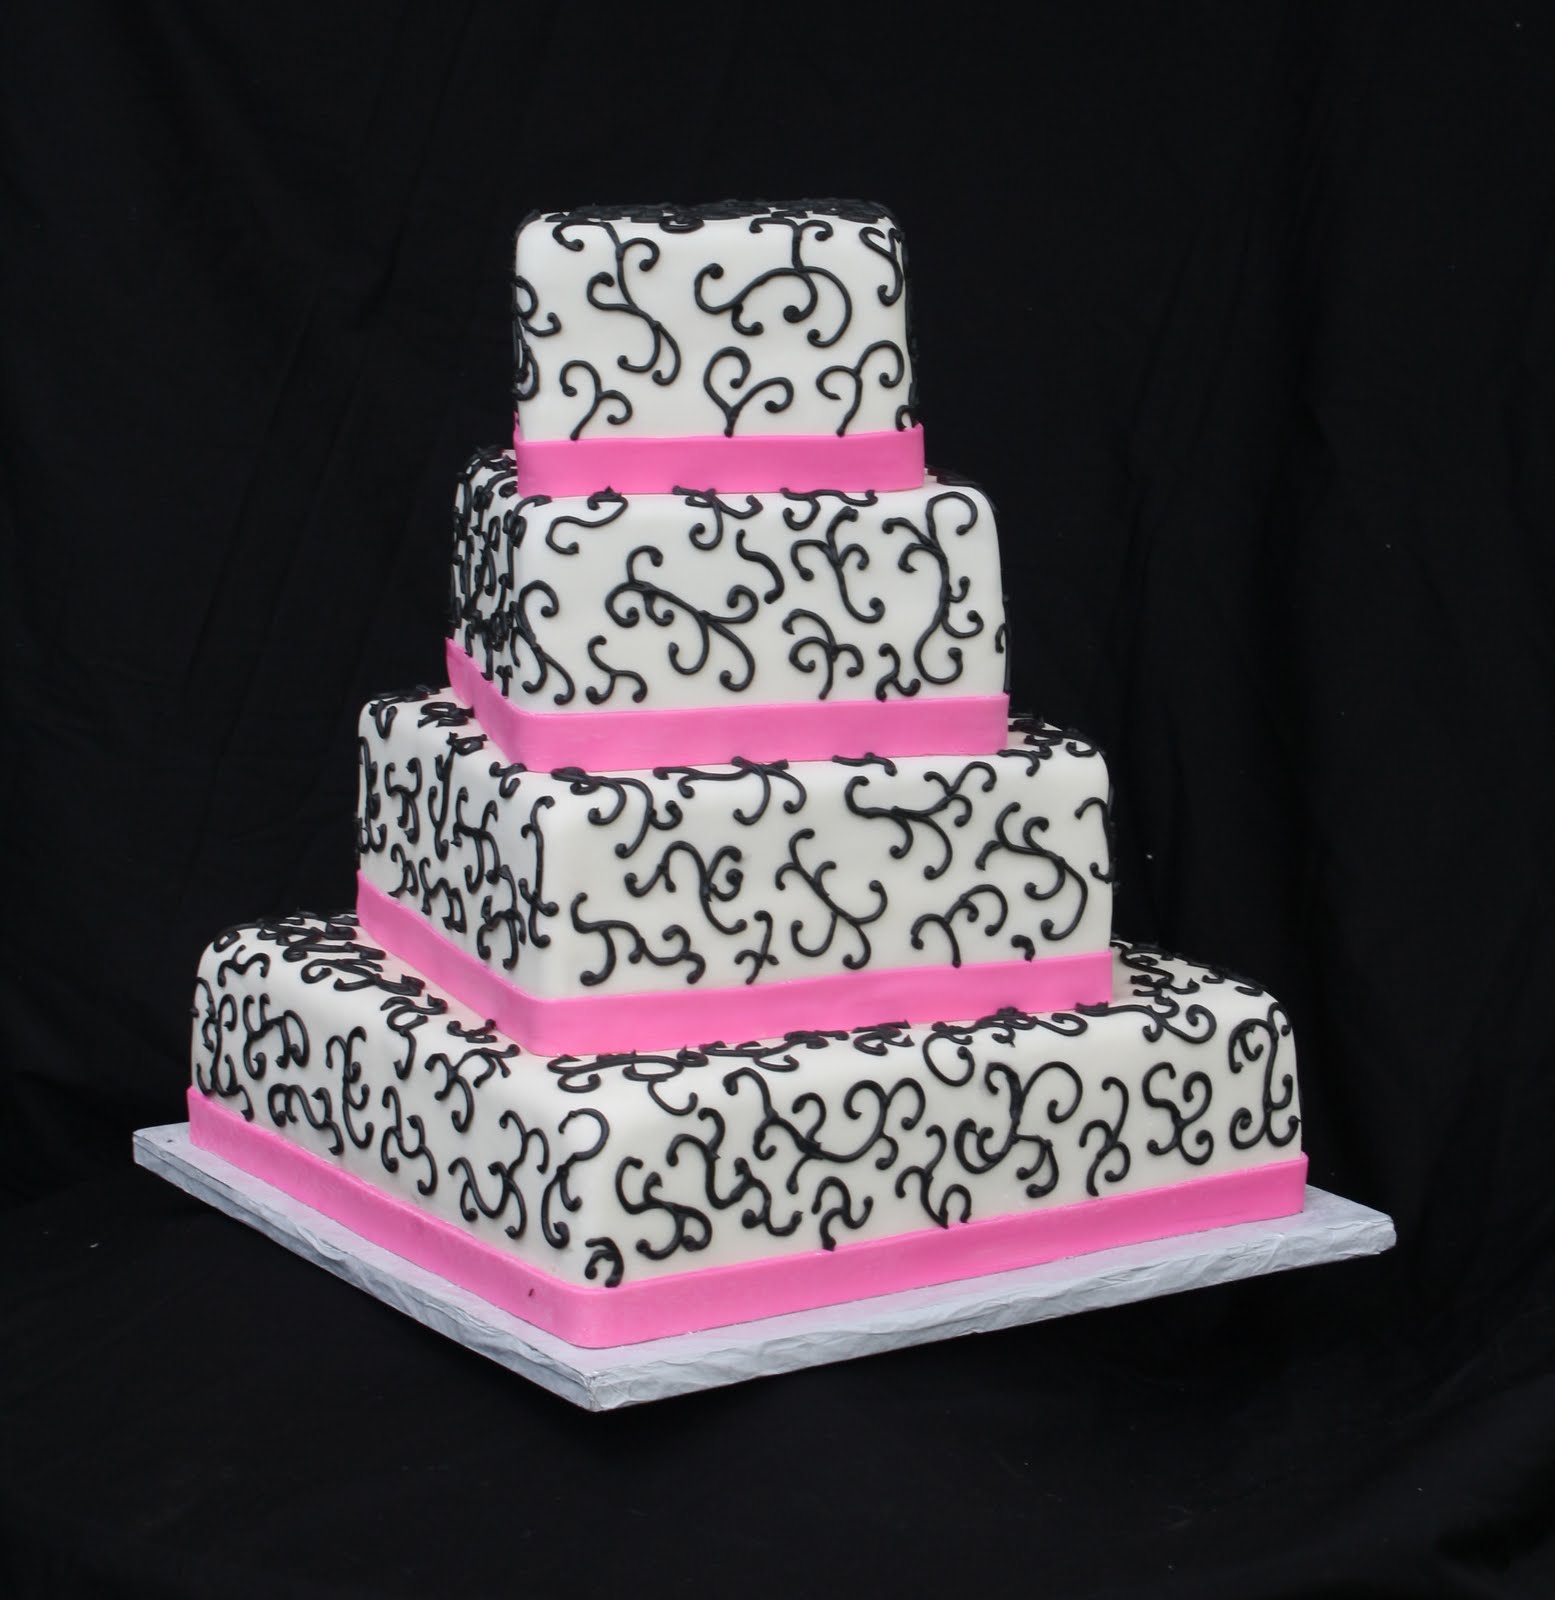 http://1.bp.blogspot.com/-5WhBspScQv0/TiRohP1Da4I/AAAAAAAAHpE/i5UE8ptUUtY/s1600/Black+Pink+Wedding+Cake.jpg